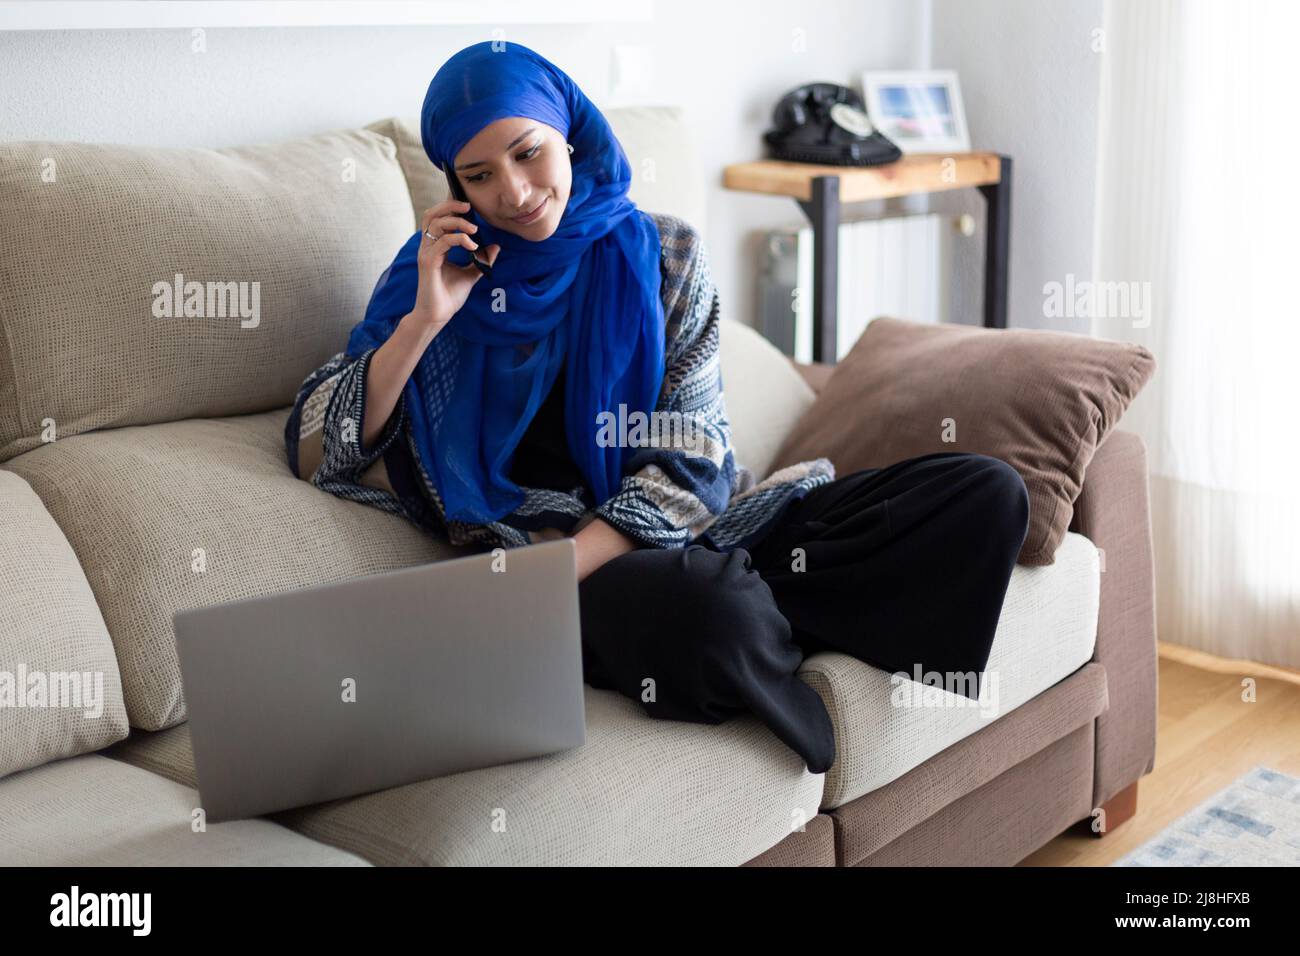 Jeune femme musulmane travaillant à domicile. Elle utilise un ordinateur portable tout en parlant au téléphone. Banque D'Images